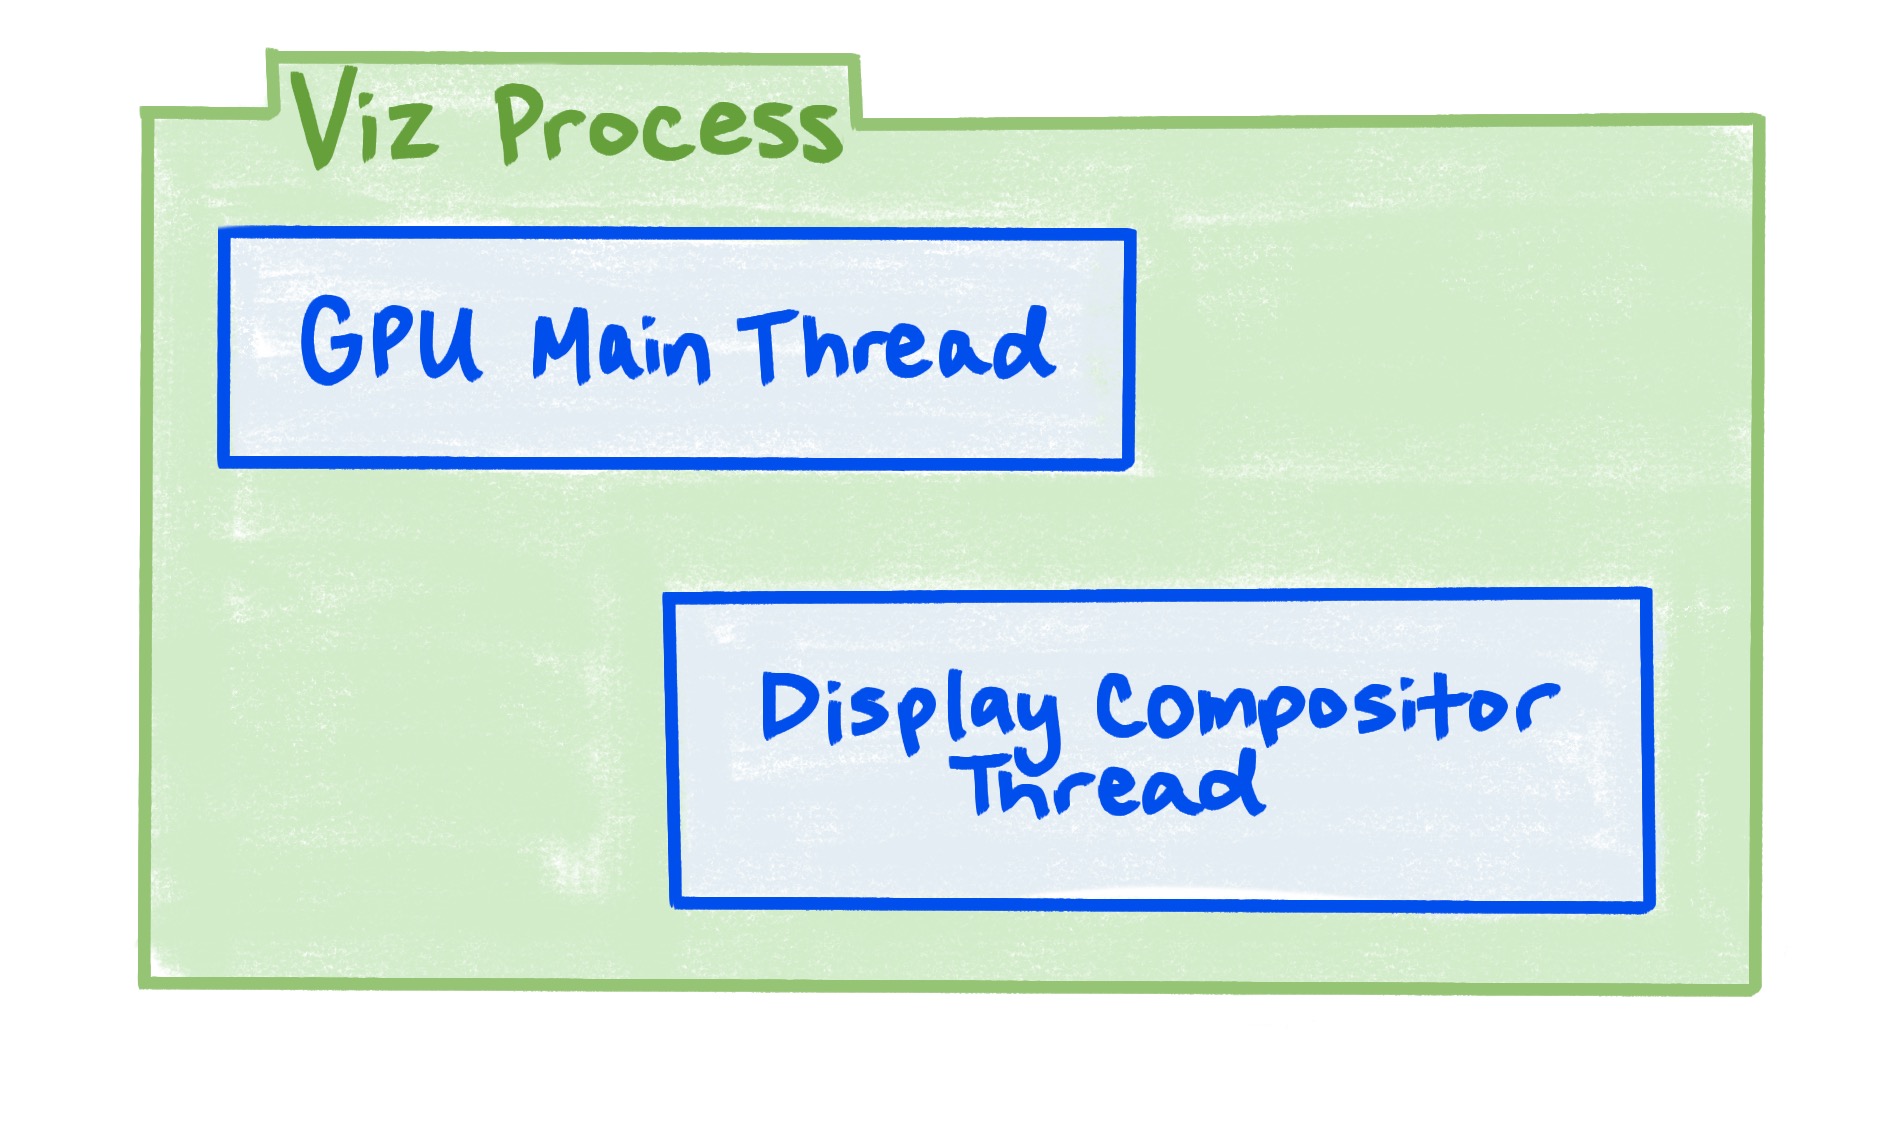 顯示 Viz 程序包含 GPU 主執行緒和螢幕合成器執行緒的圖表。